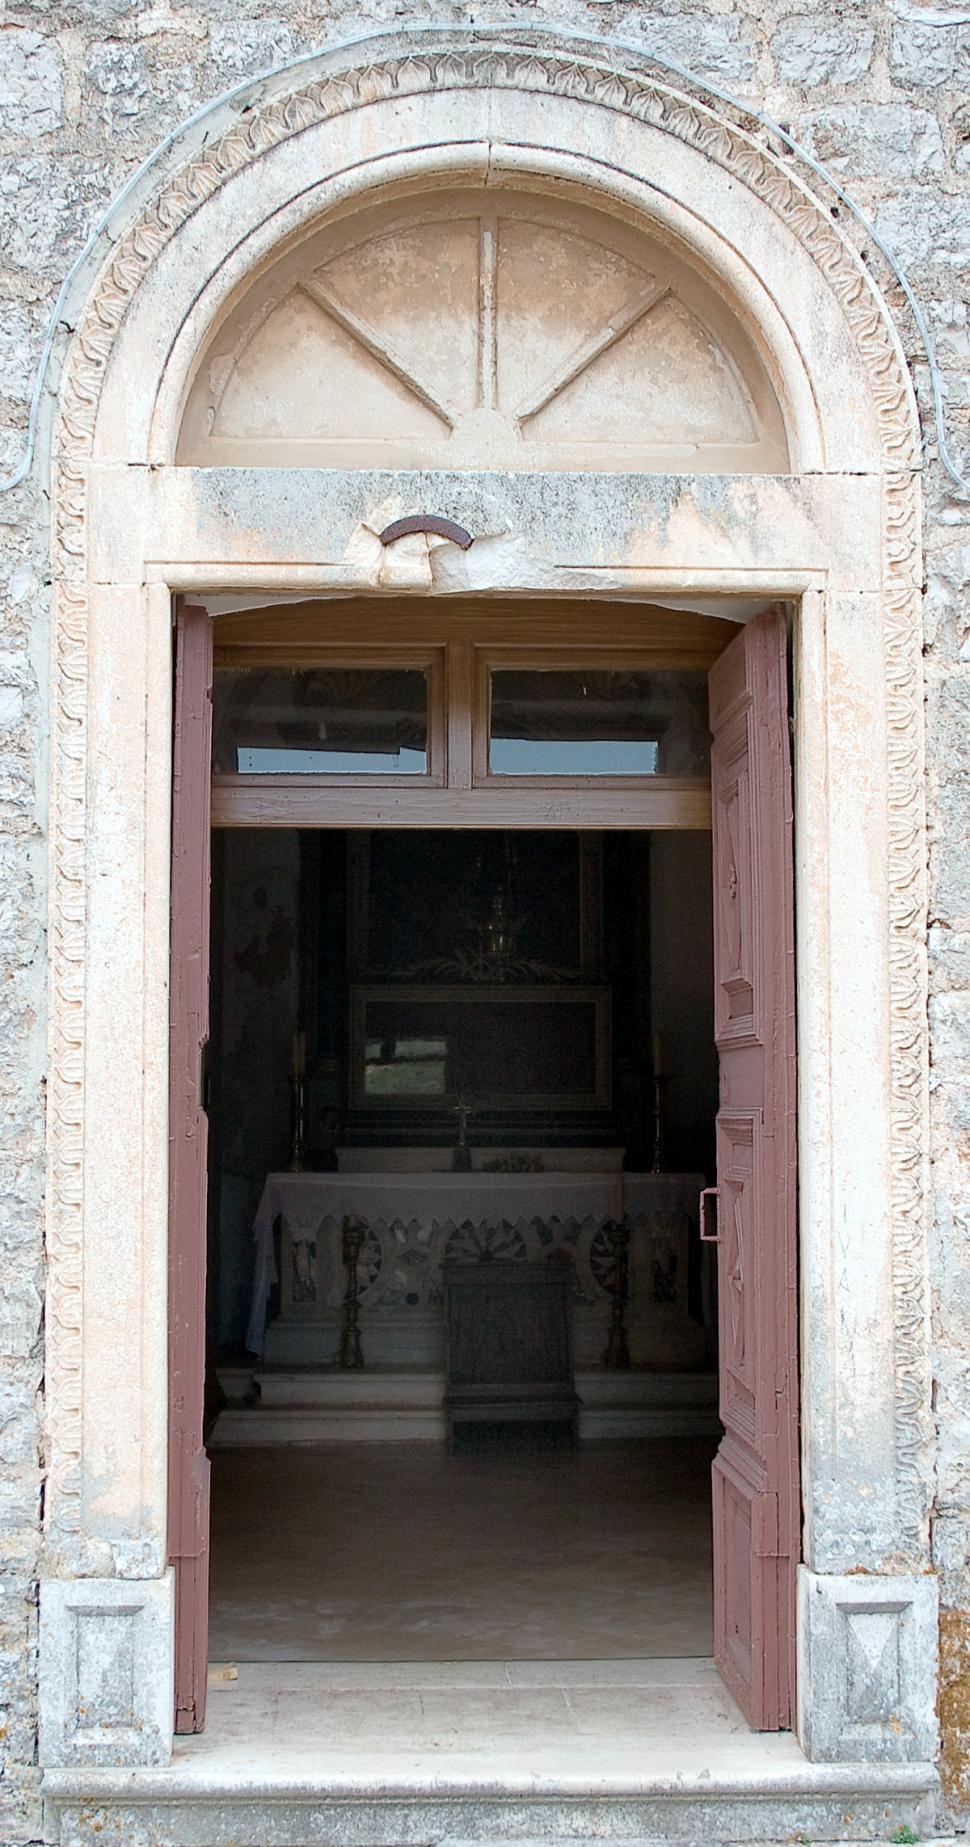 Free Image of Church door 